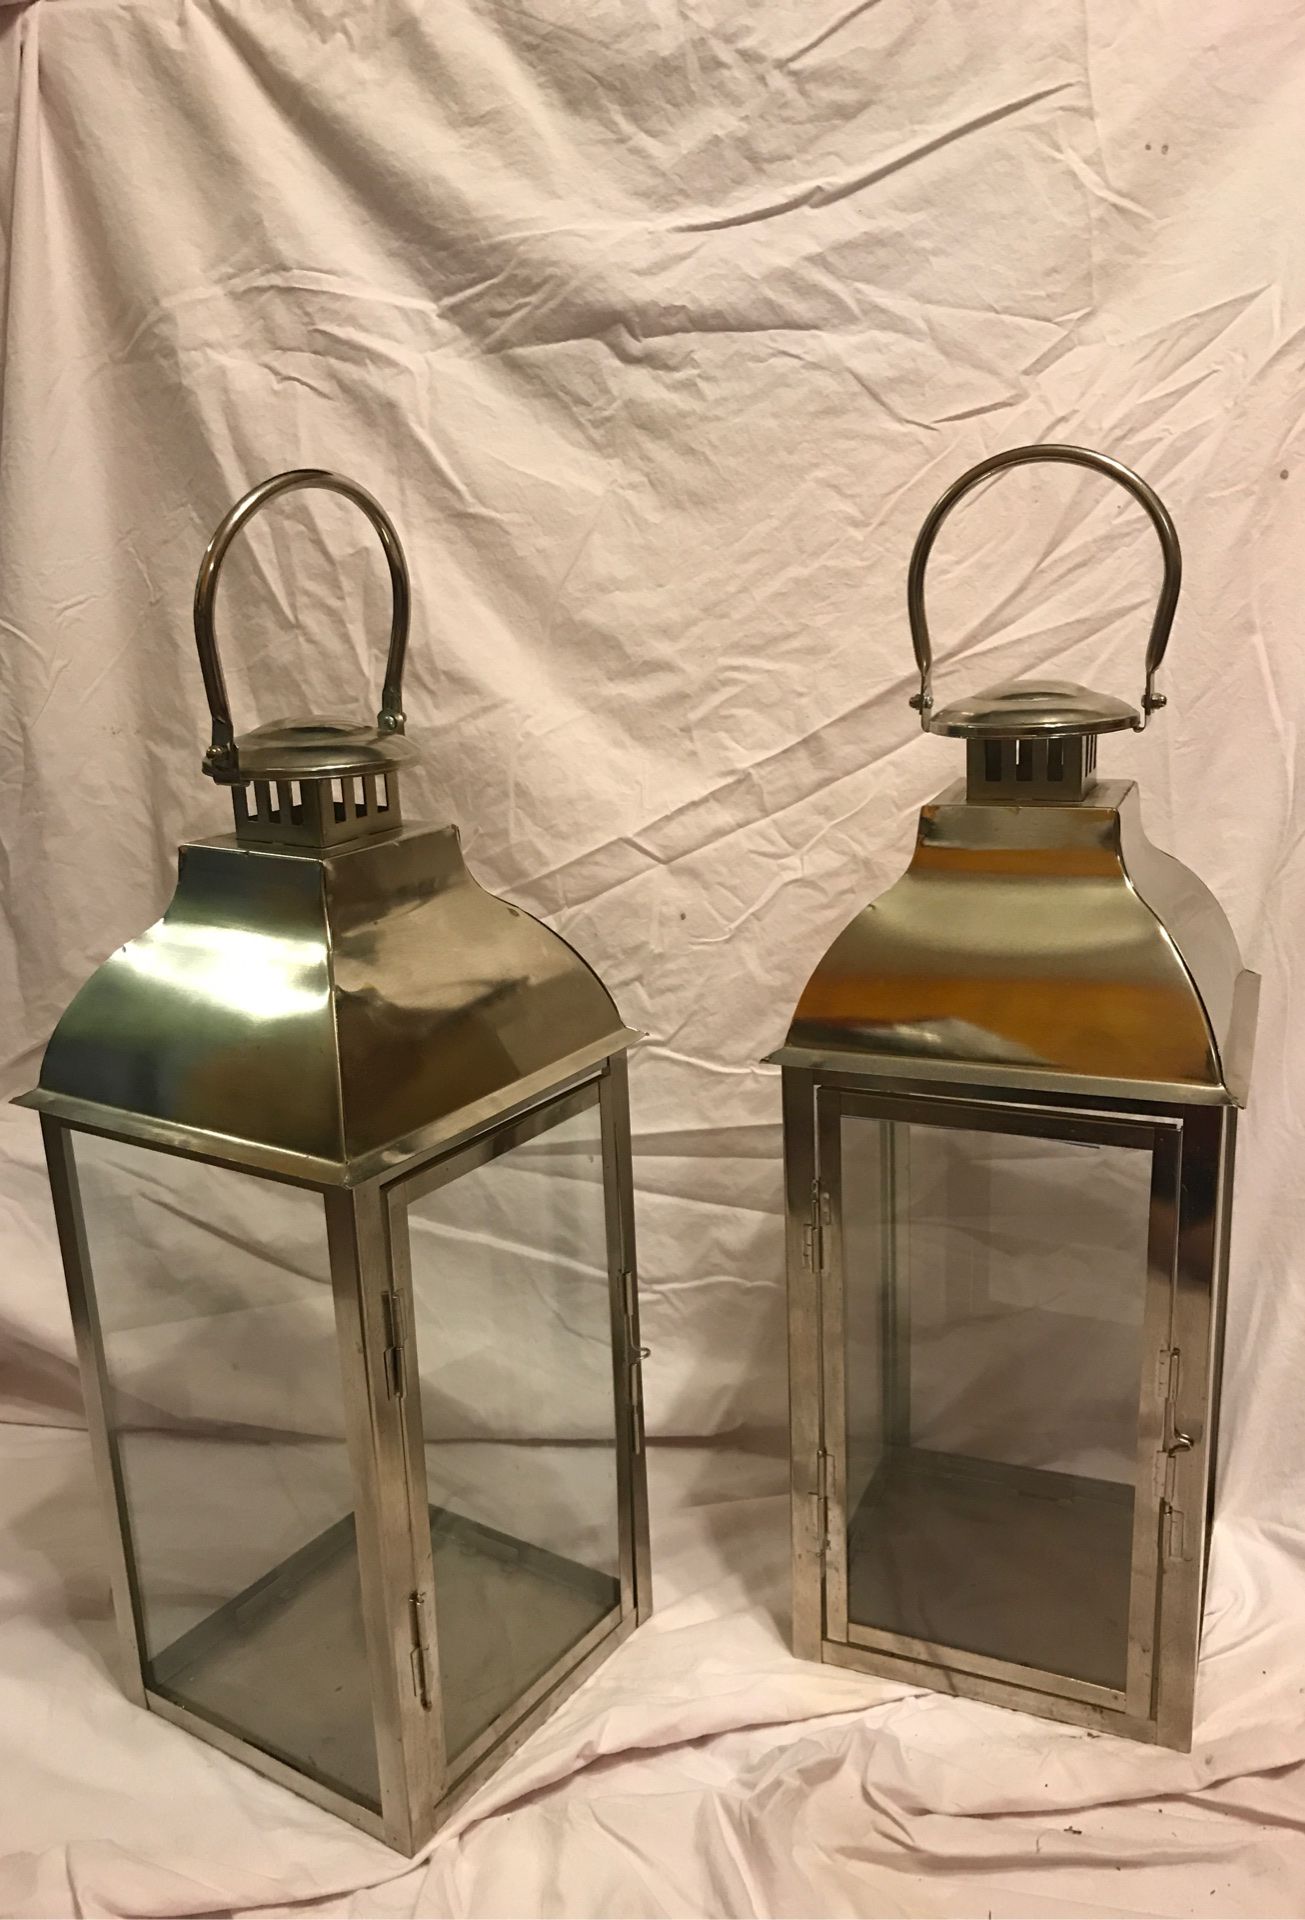 Two silver lanterns